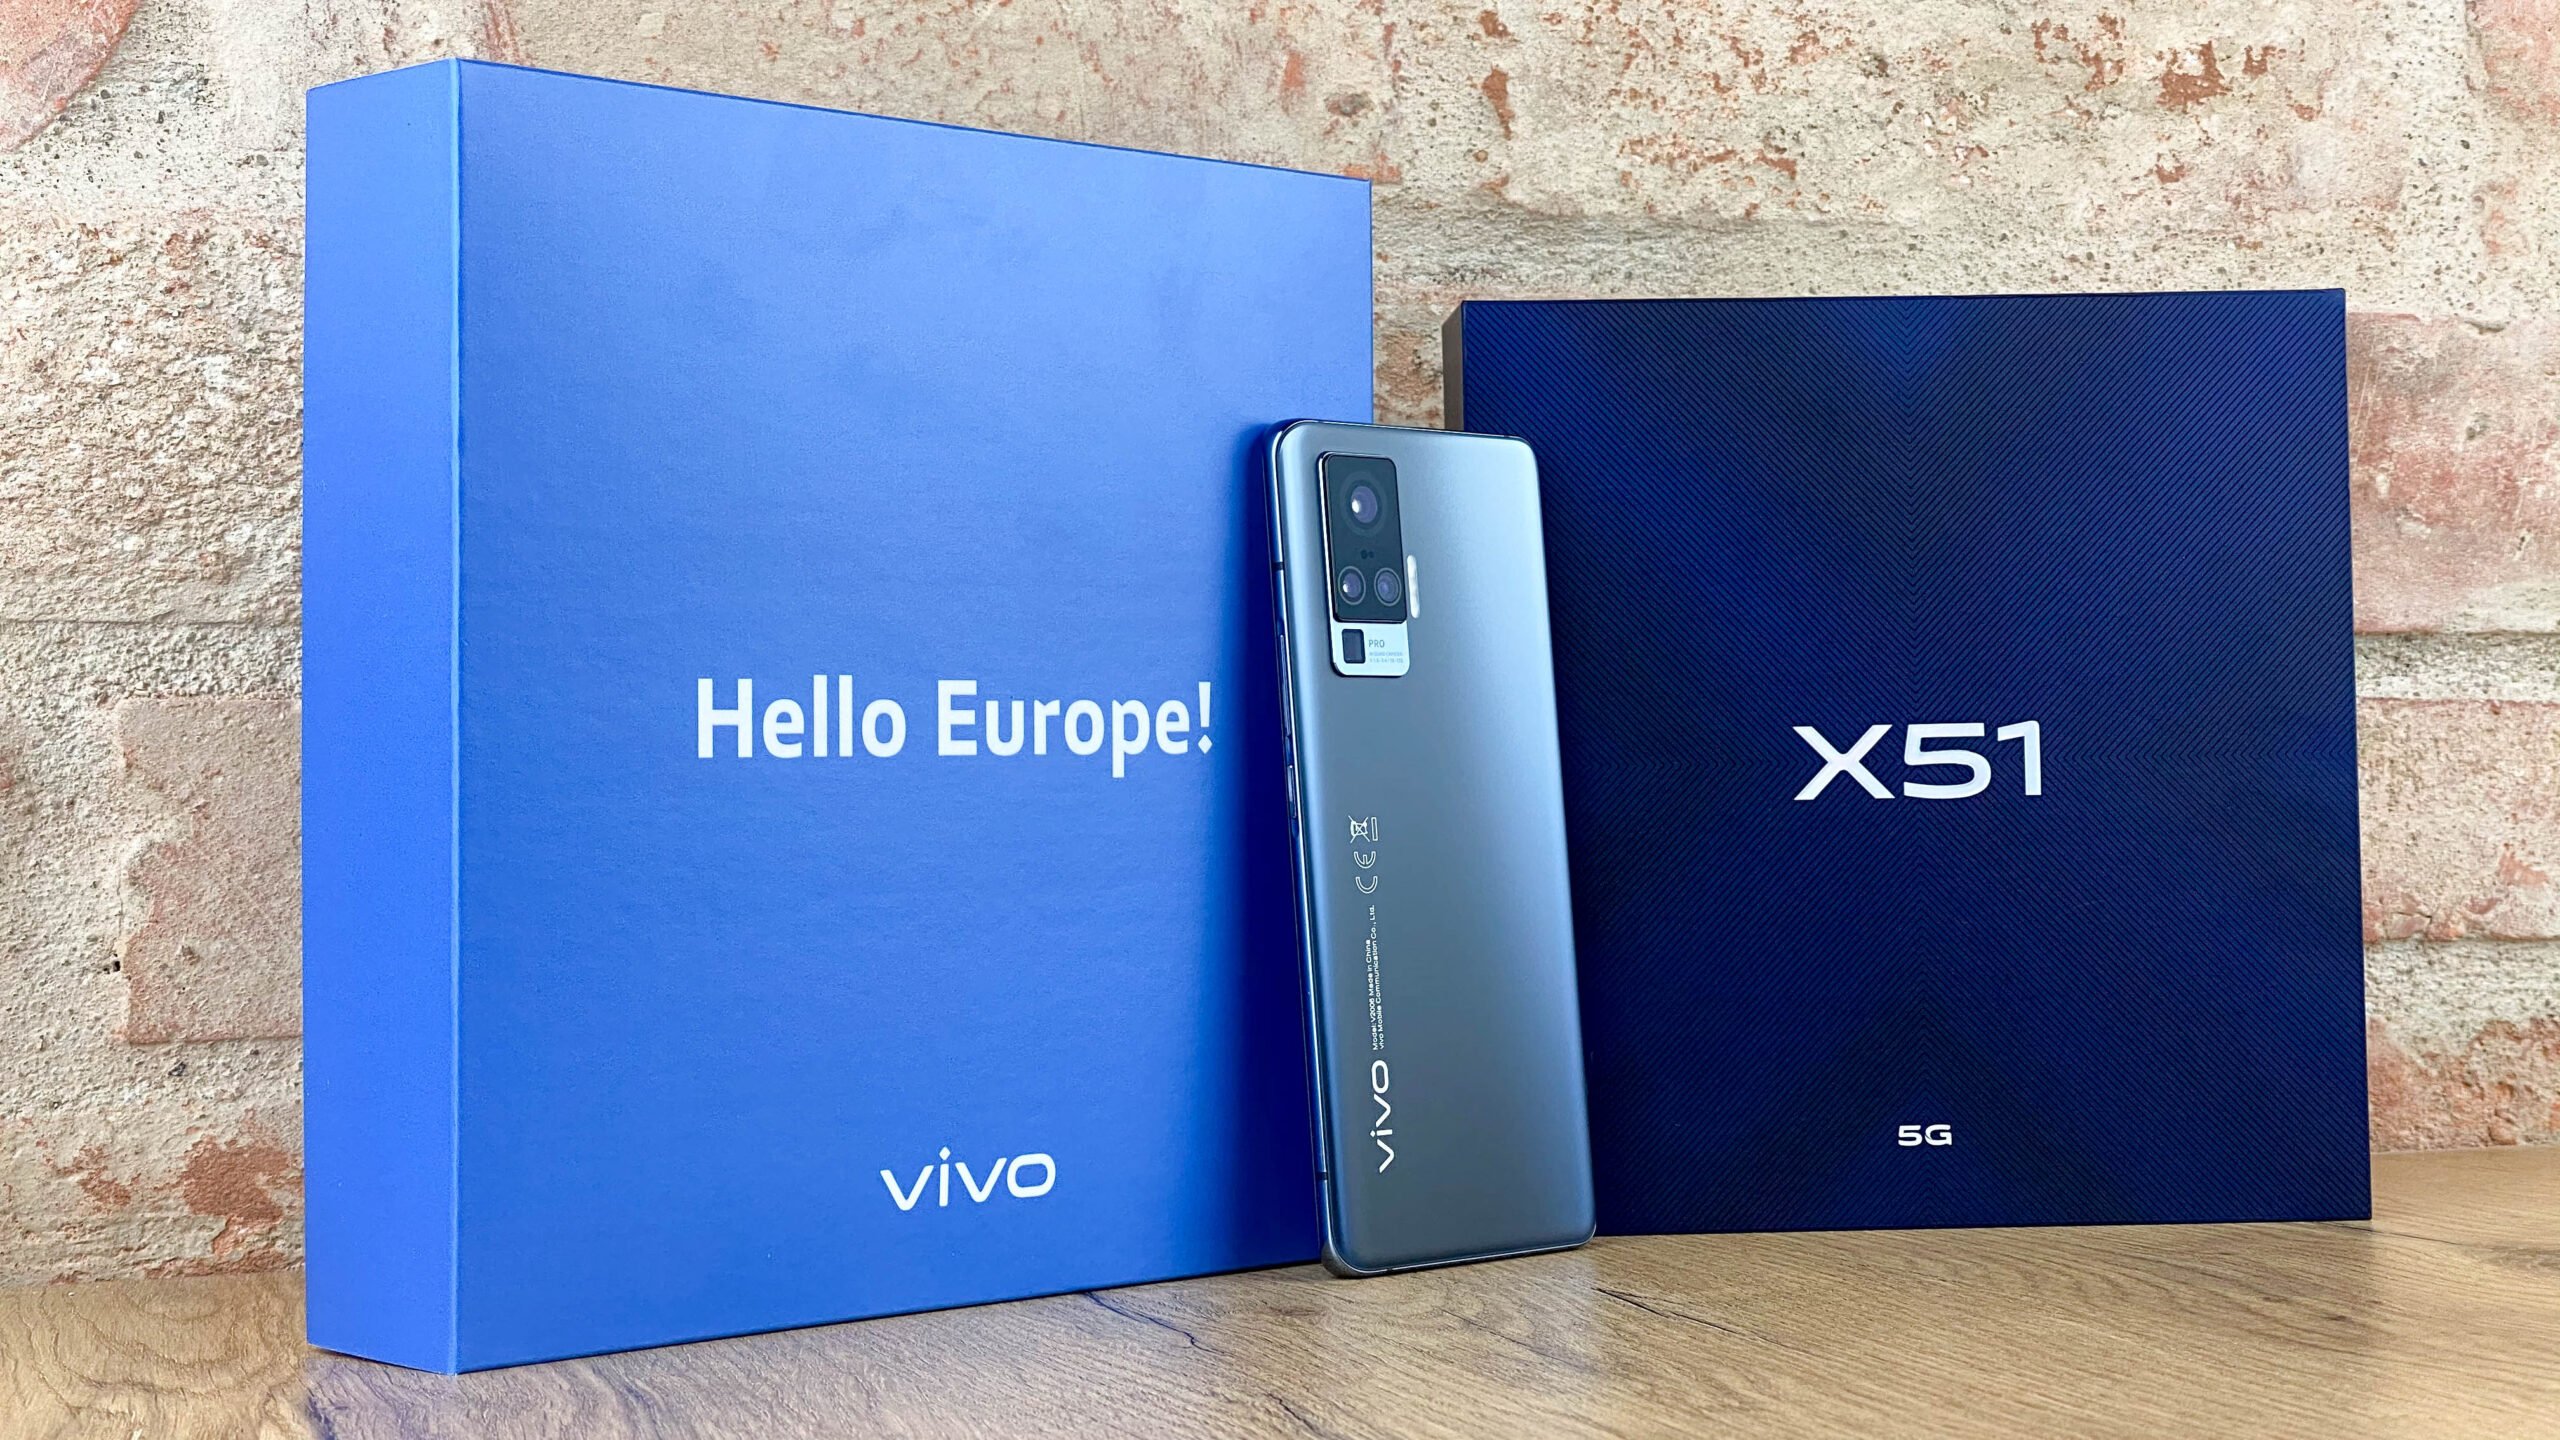 X51 5G, czyli nowy smartfon od Vivo, do kupienia w Europie